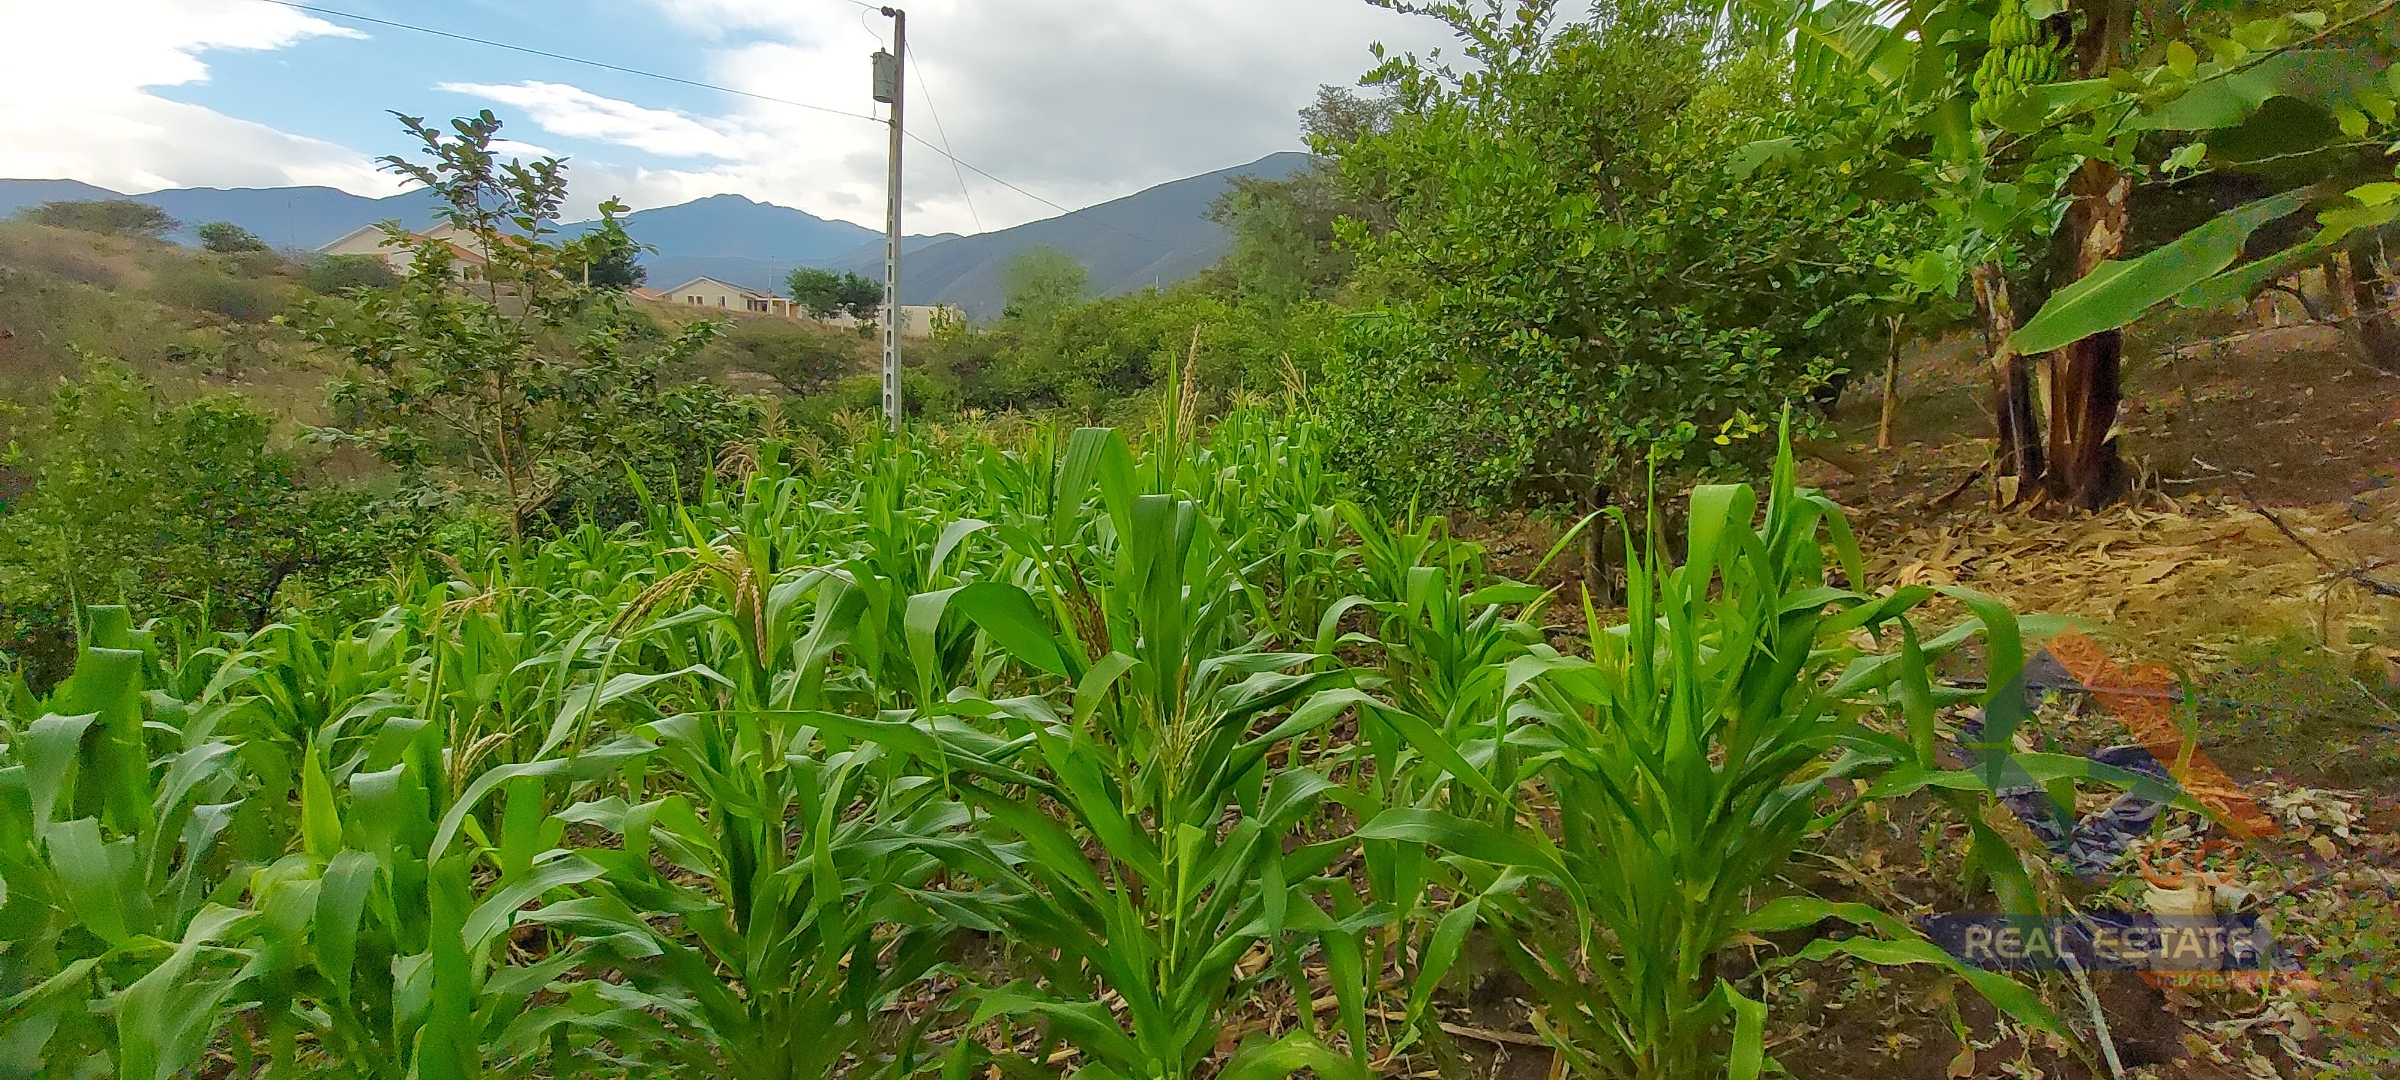 Venta de 3 Lotes de Terreno con Riego en el Valle de Catamayo, Provincia de Loja.